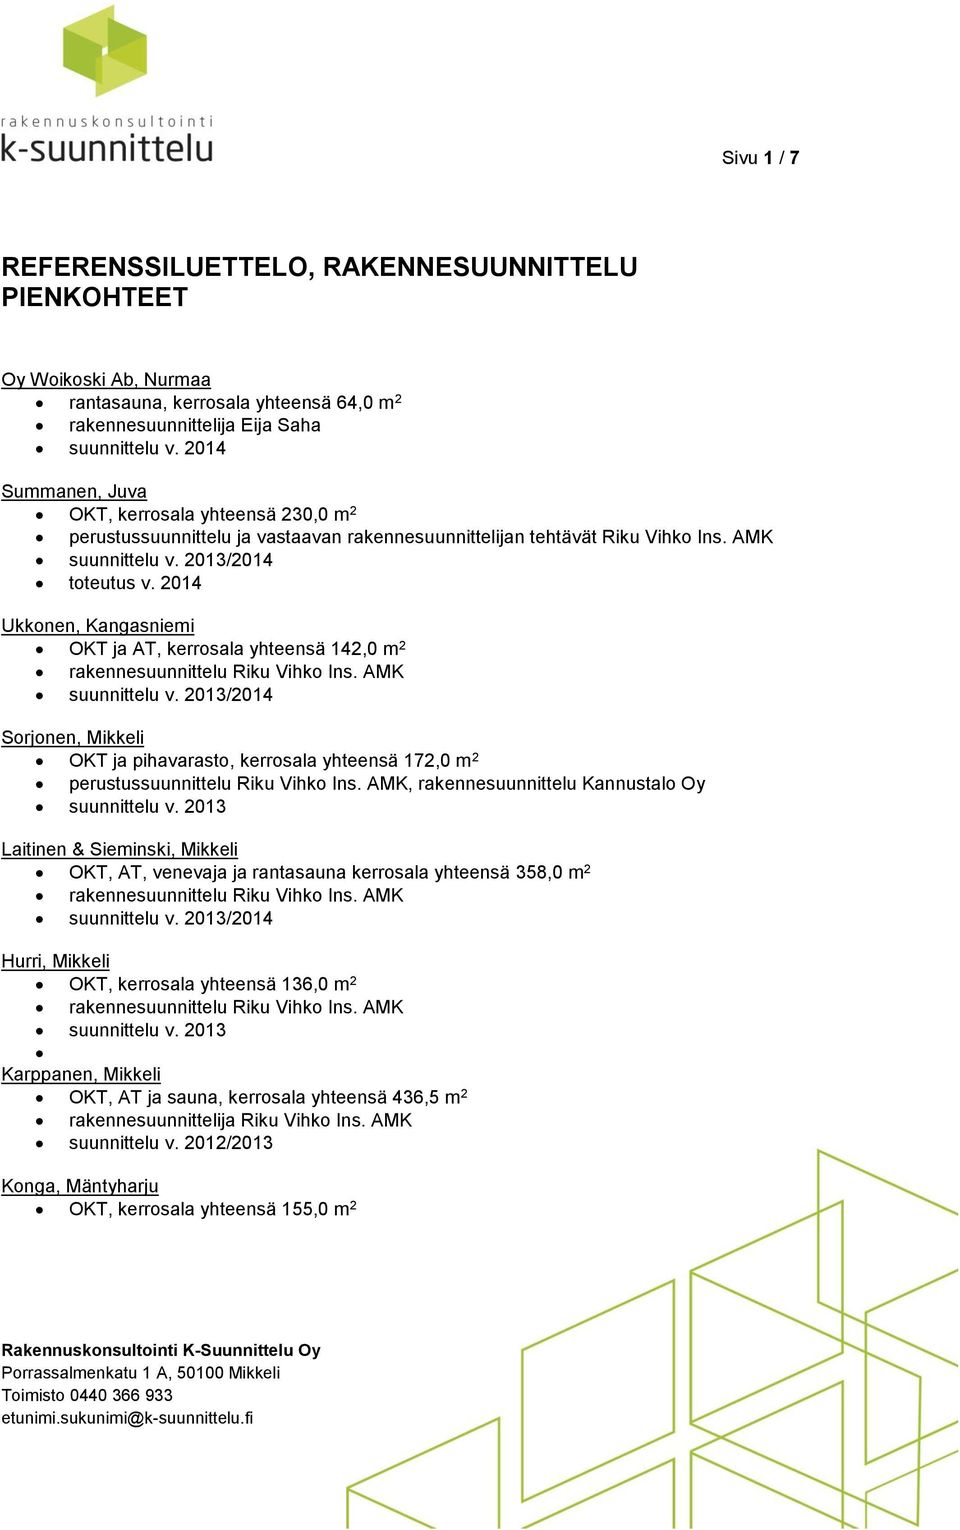 2014 Ukkonen, Kangasniemi OKT ja AT, kerrosala yhteensä 142,0 m 2 suunnittelu v. 2013/2014 Sorjonen, Mikkeli OKT ja pihavarasto, kerrosala yhteensä 172,0 m 2 perustussuunnittelu Riku Vihko Ins.